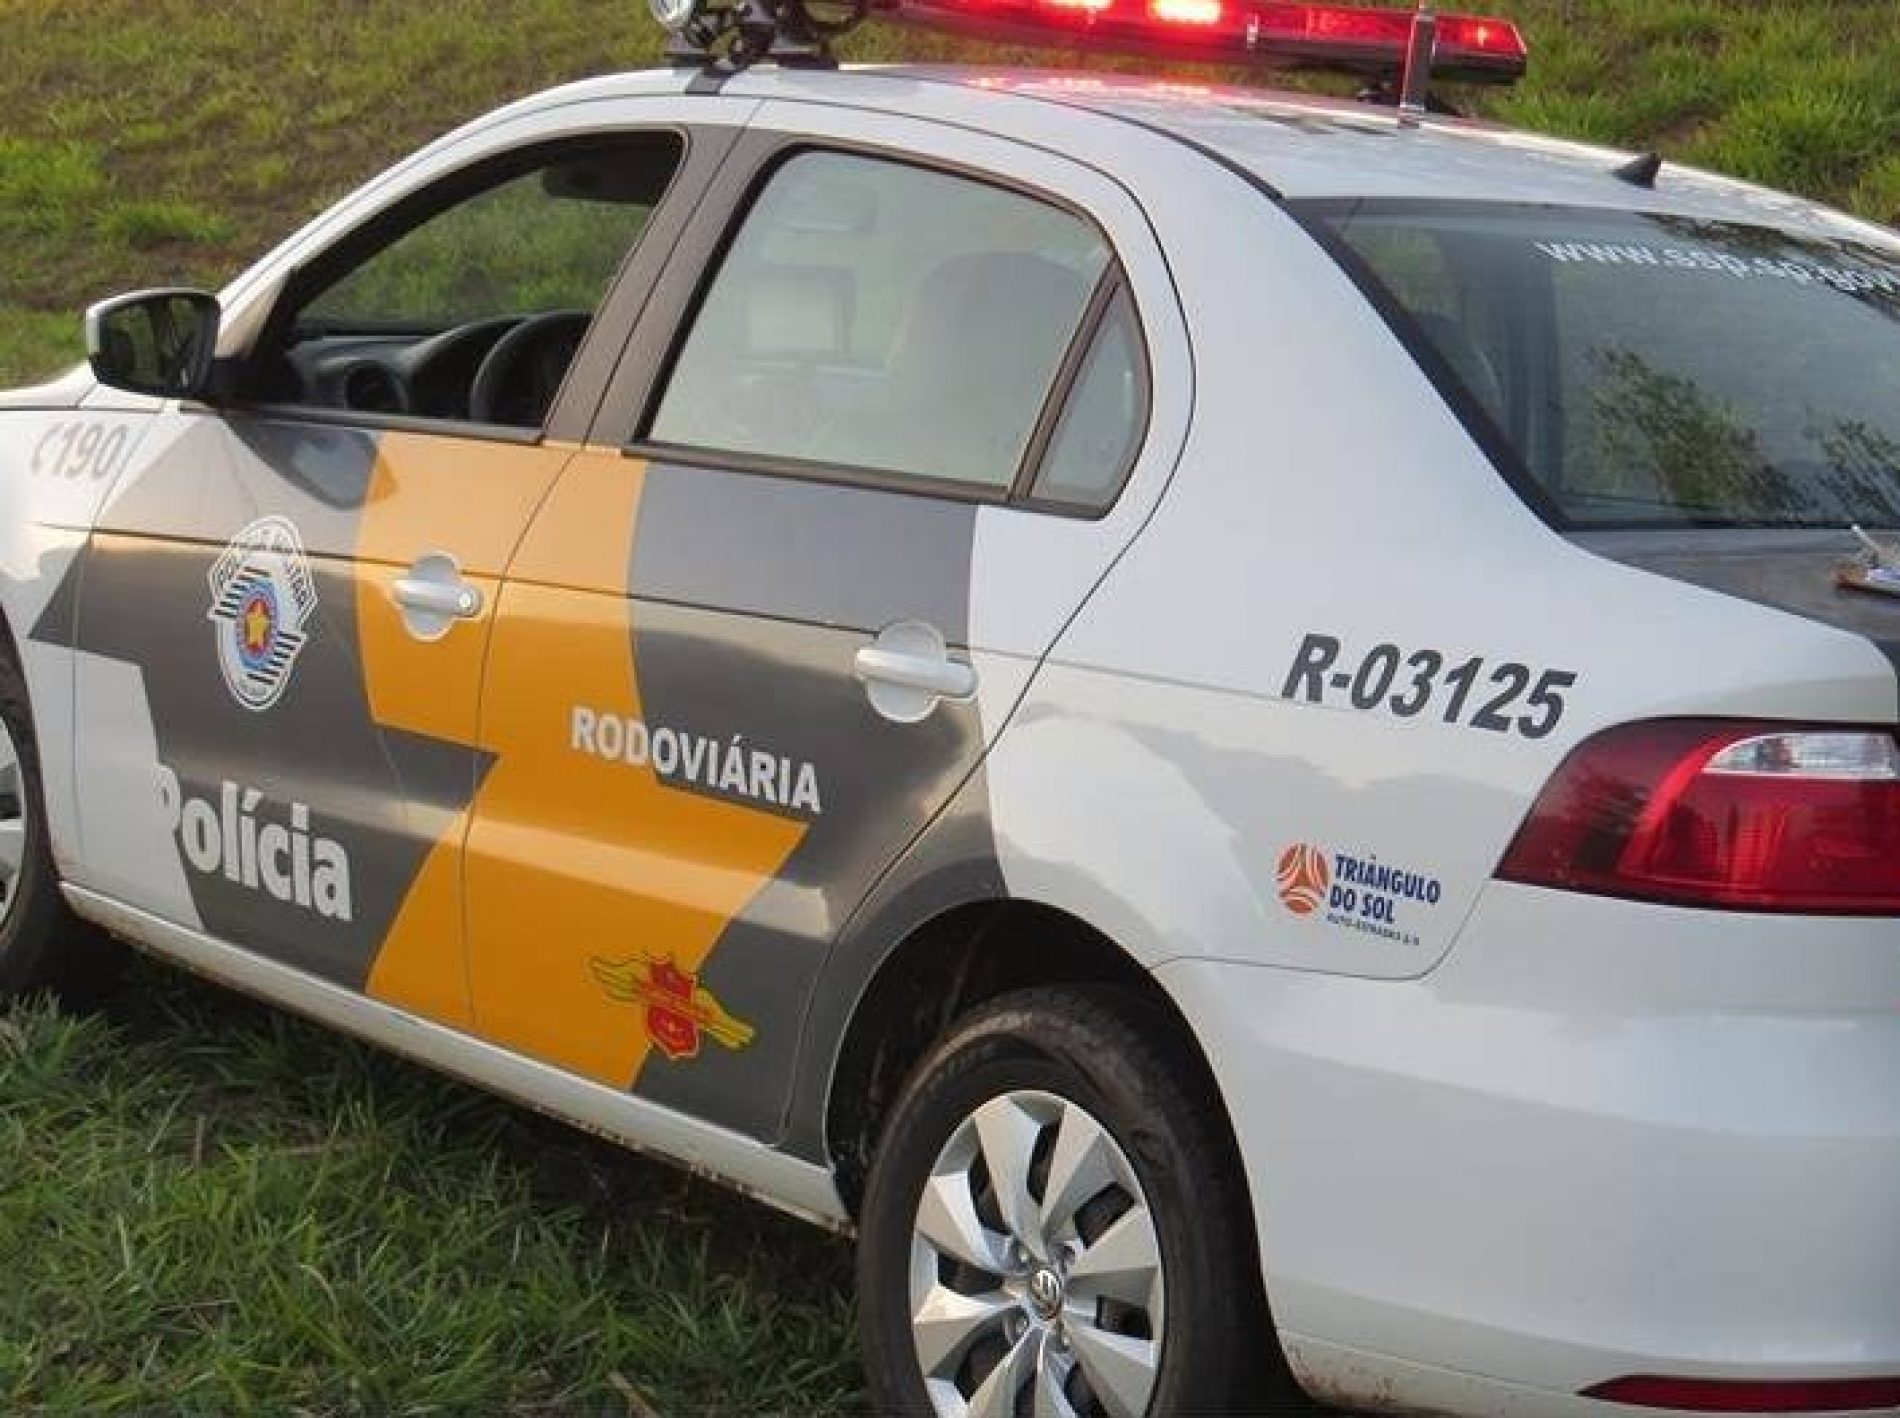 BARRETOS: Embriagado e com CNH suspensa, motorista bate carro contra viatura policial